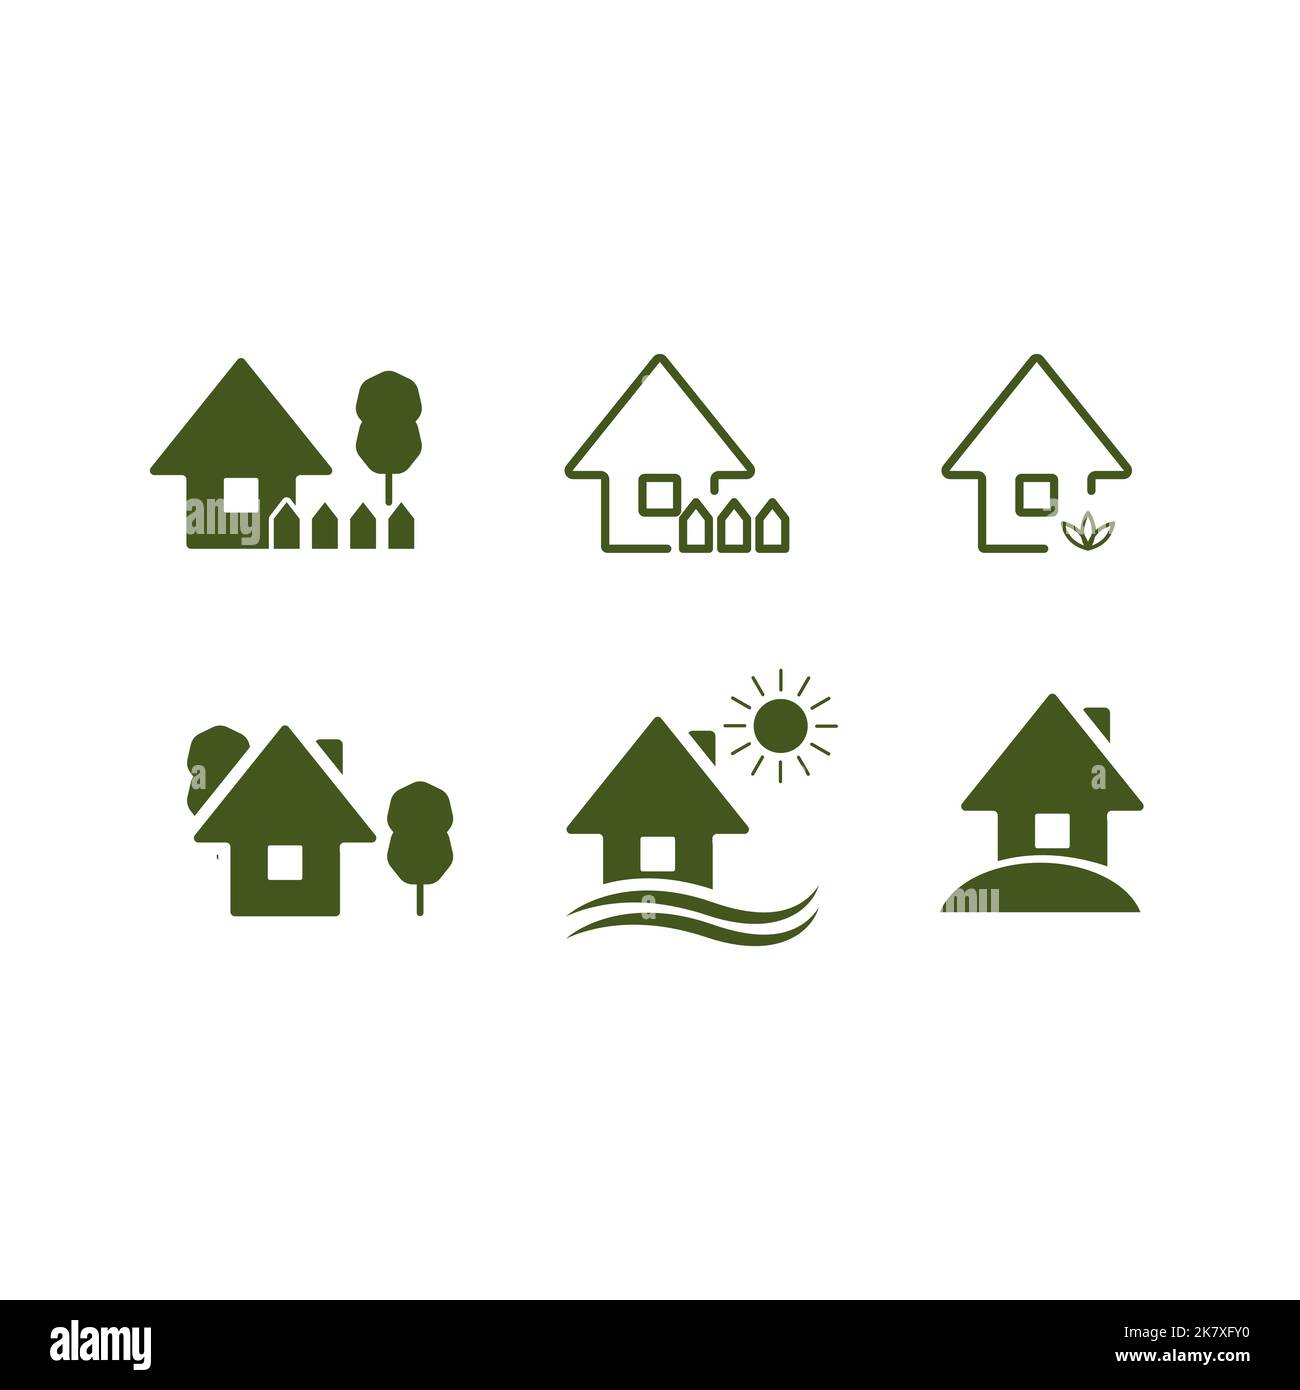 Icônes de cour de maison, parc icône de maison de cour, icône de maison vert Eco avec arbre et pelouse, format EPS 10. Illustration de Vecteur